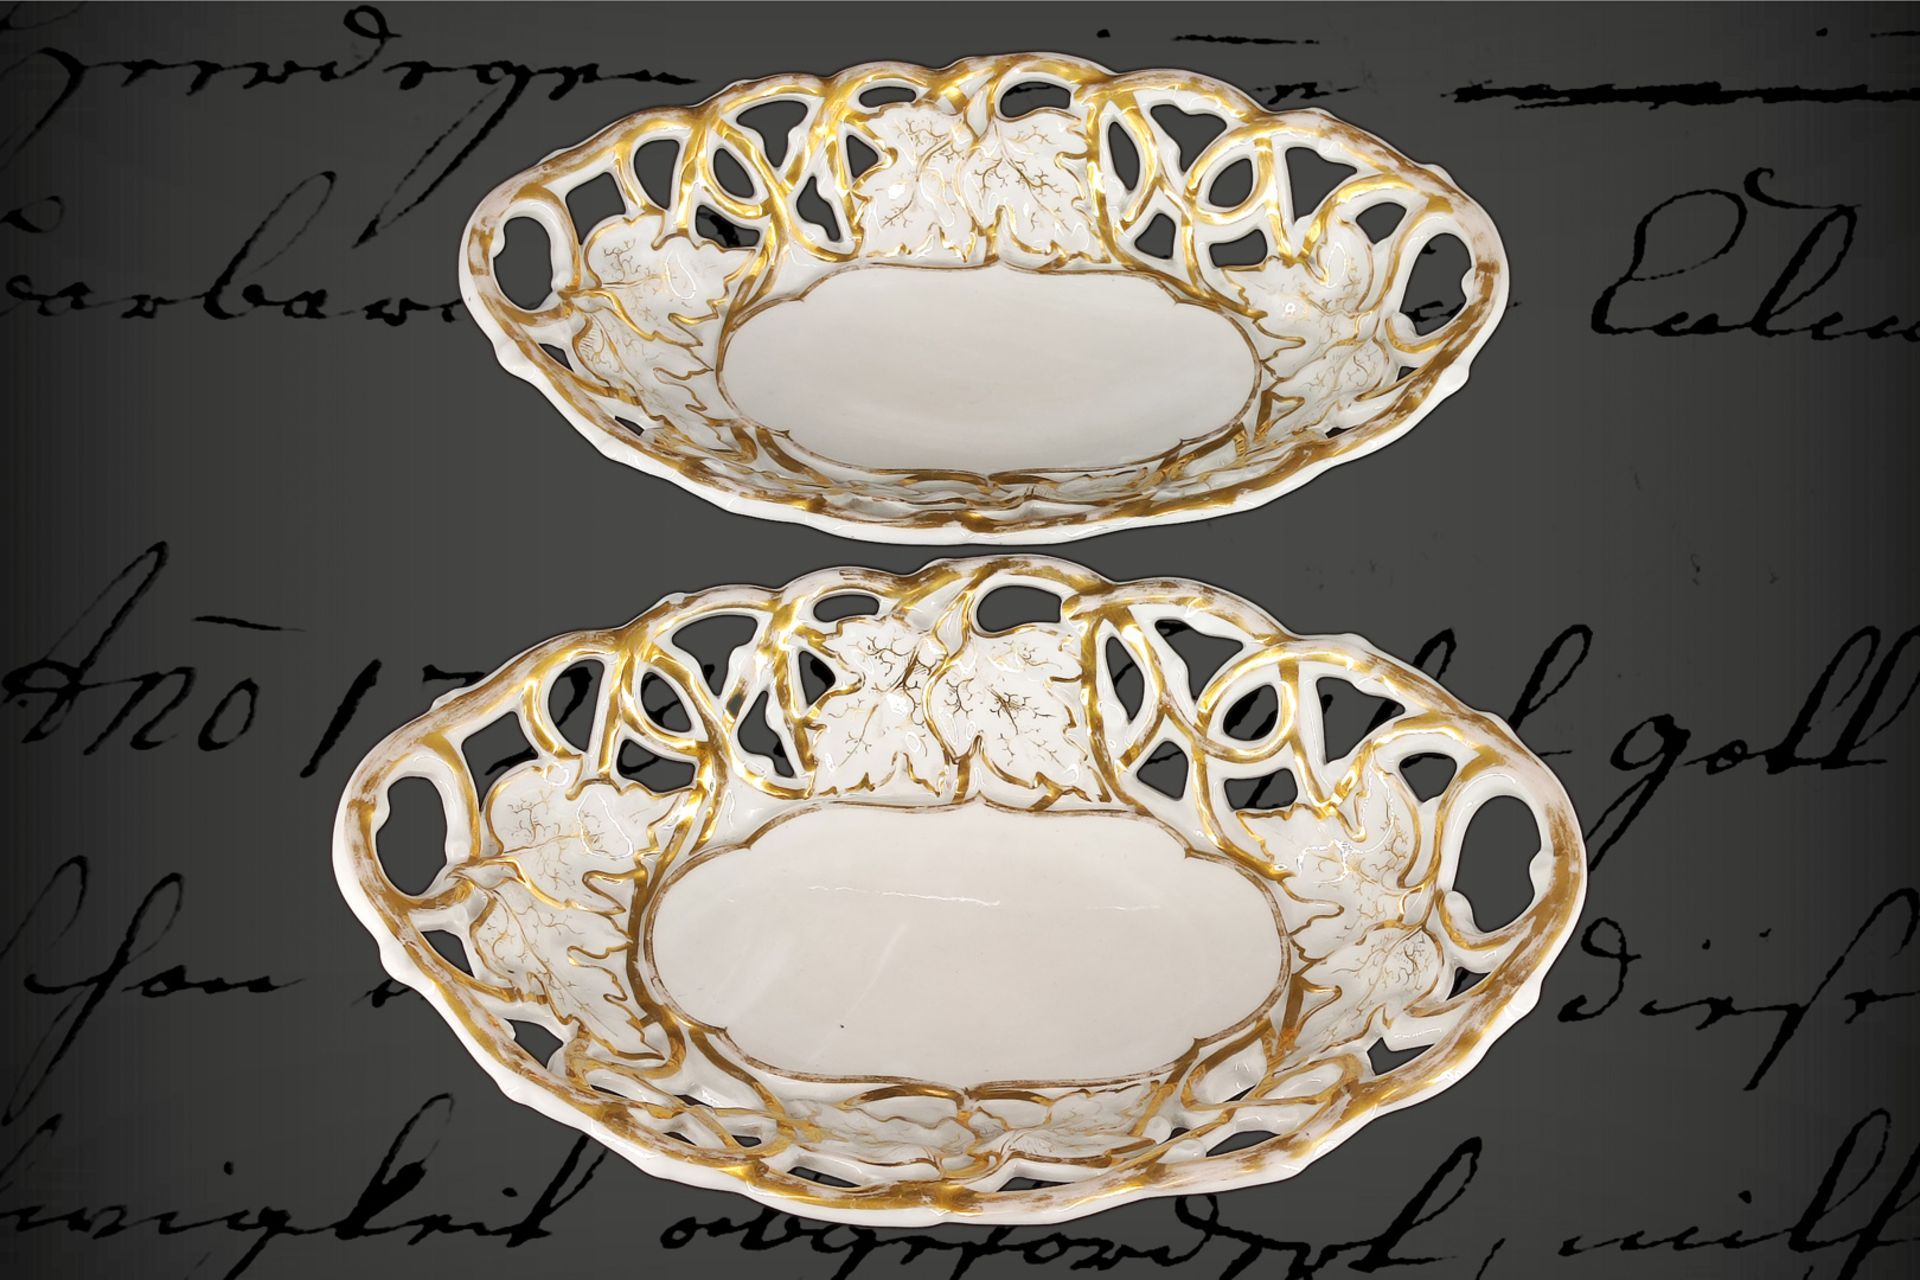 2 ovale Biedermeier-Porzellanschalen, mit durchbrochenem Rand im Laubmotiv, weiß/gold, Gold leicht